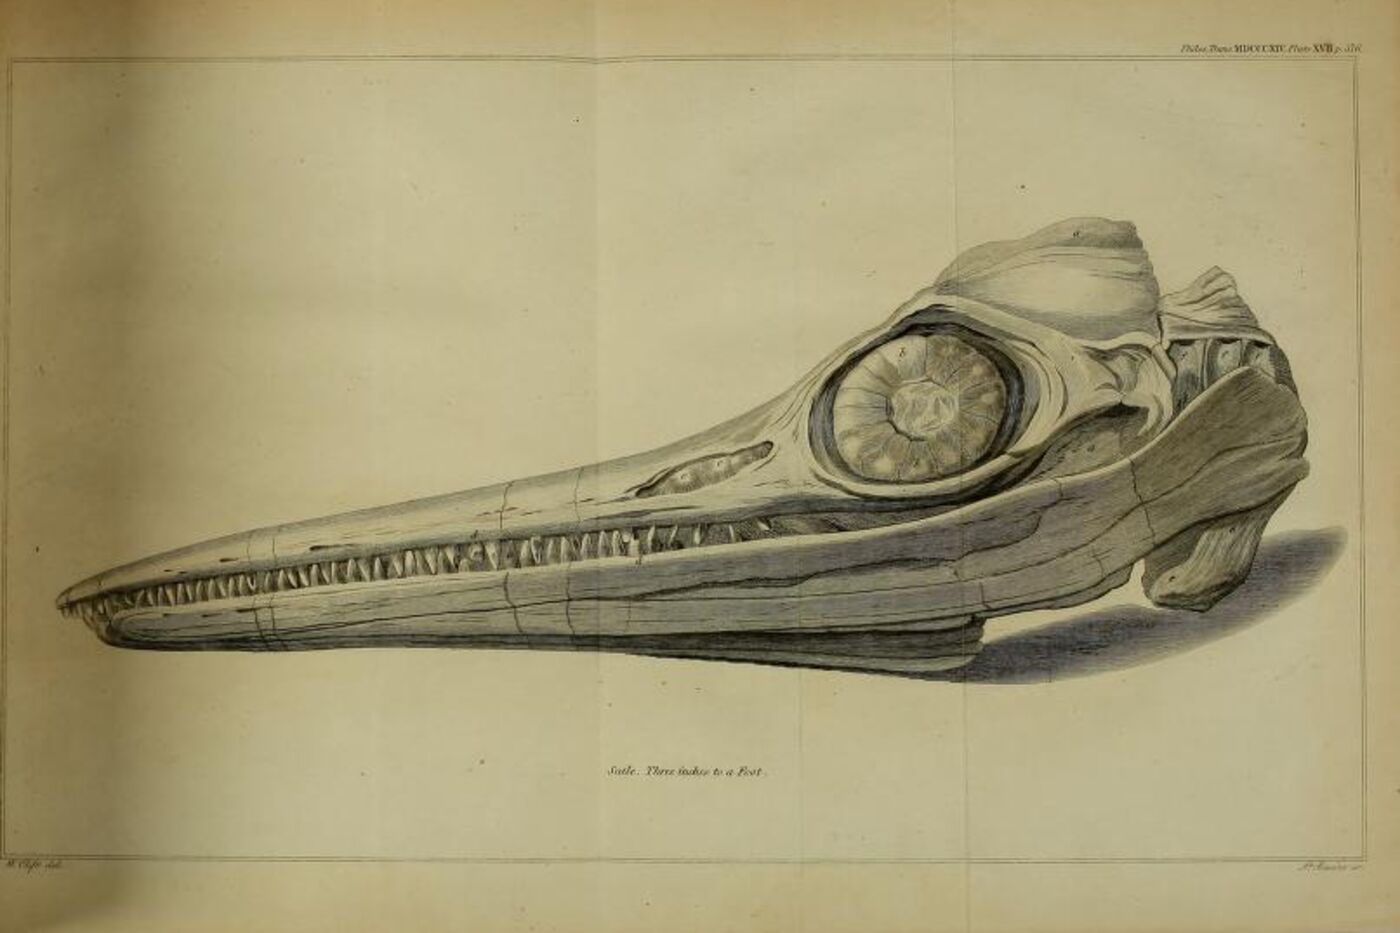 A scientific illustration of an ichthyosaur skull.